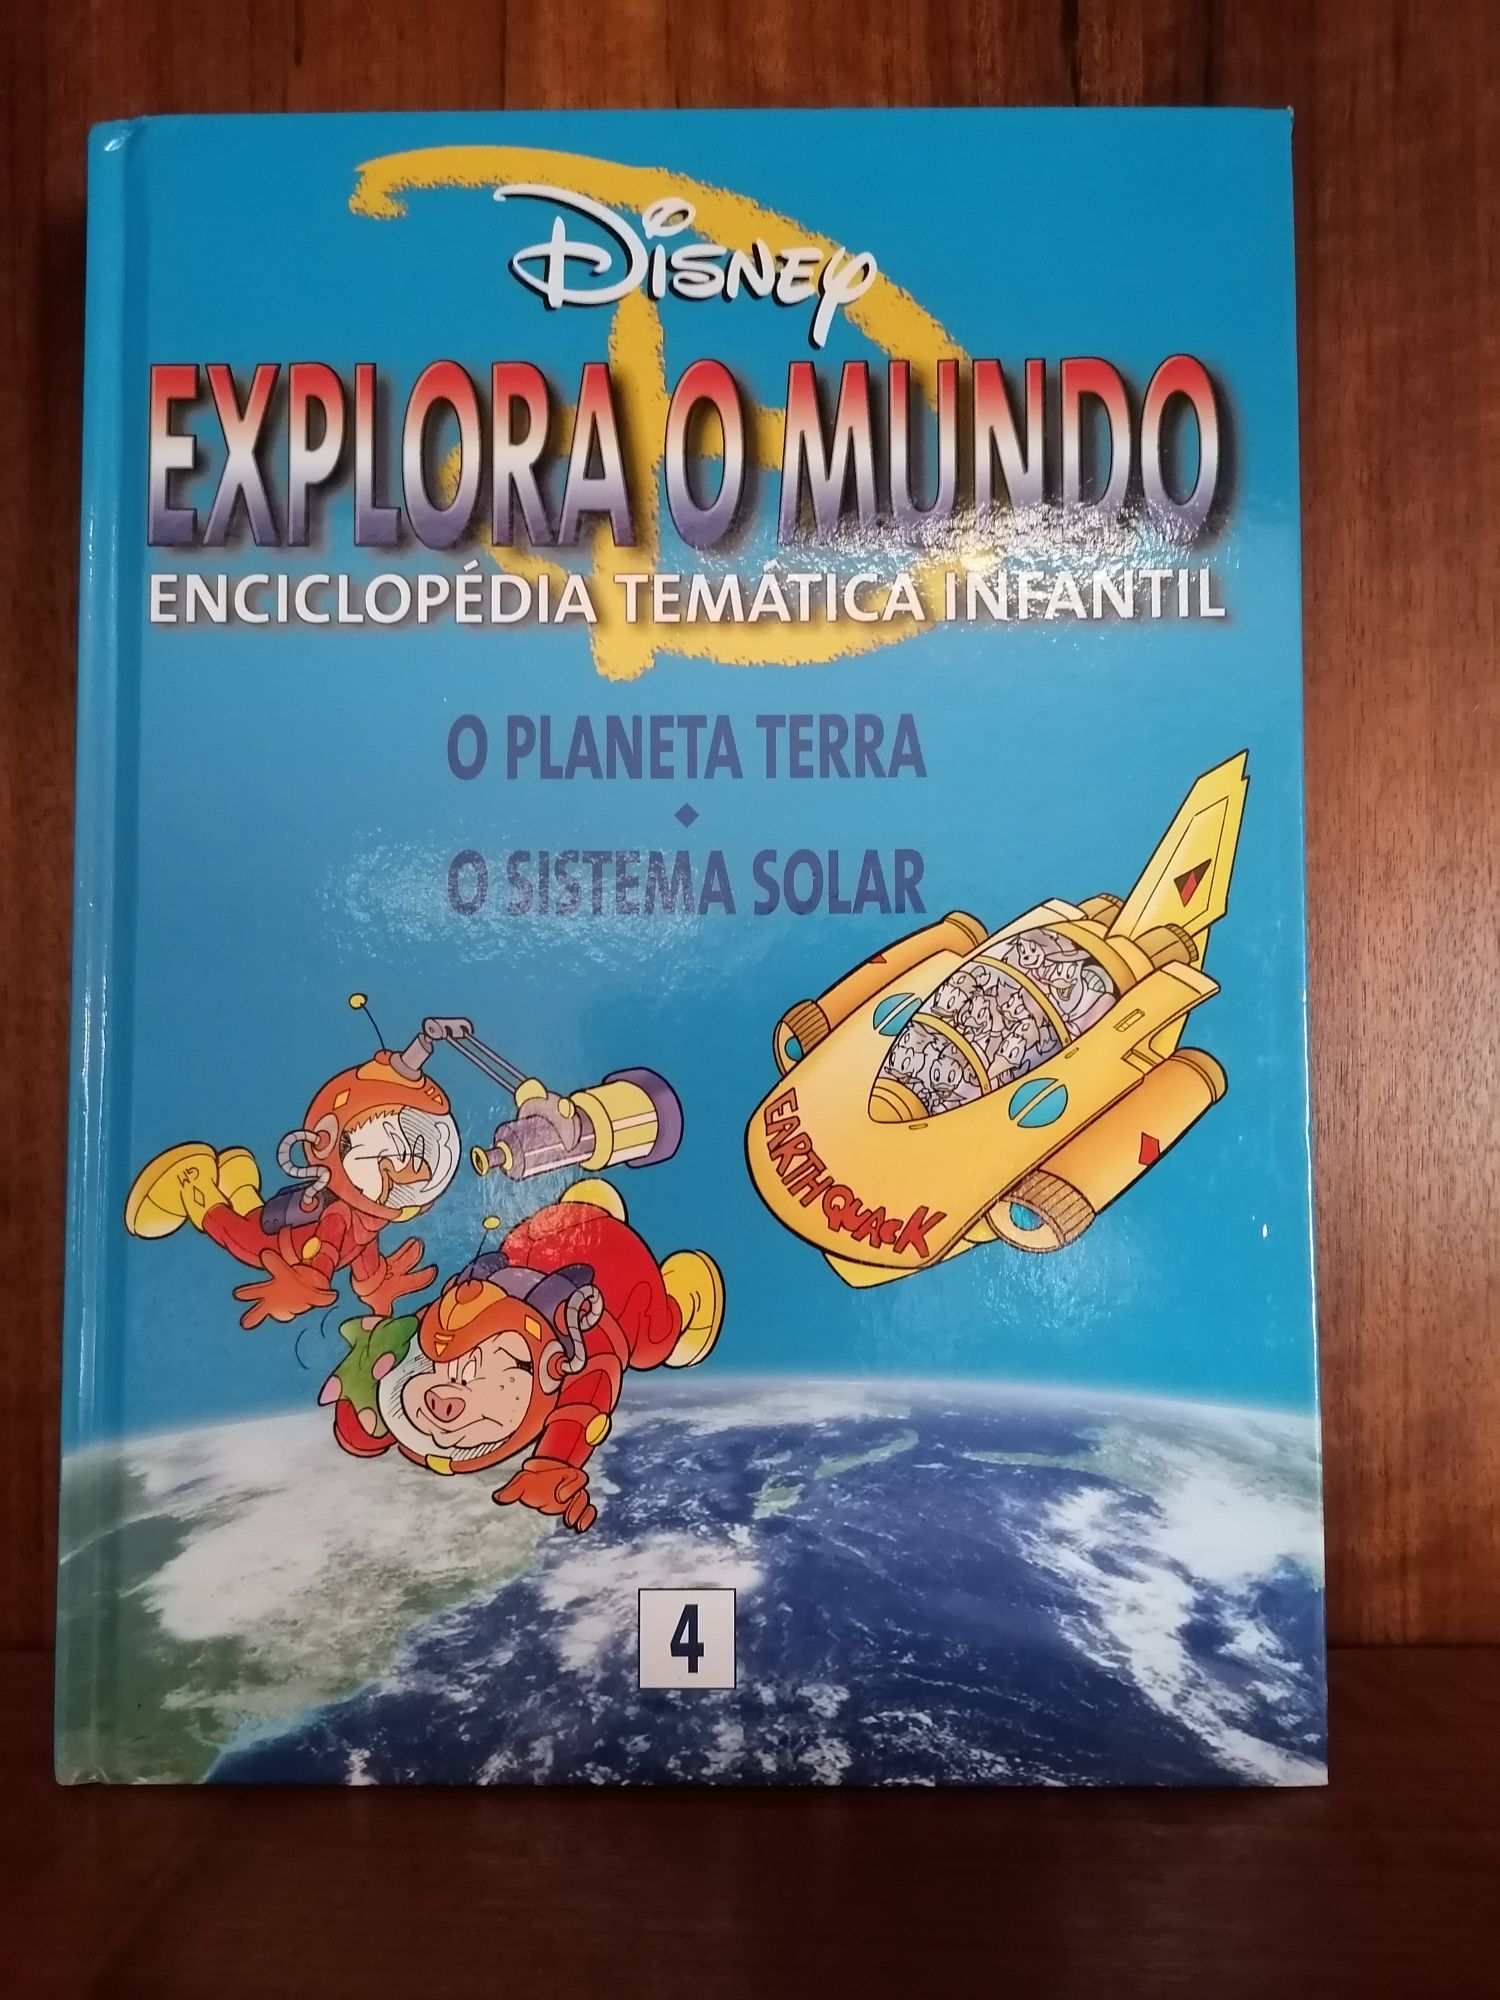 Conjunto 6 volumes enciclopédia Disney "Explora o Mundo"